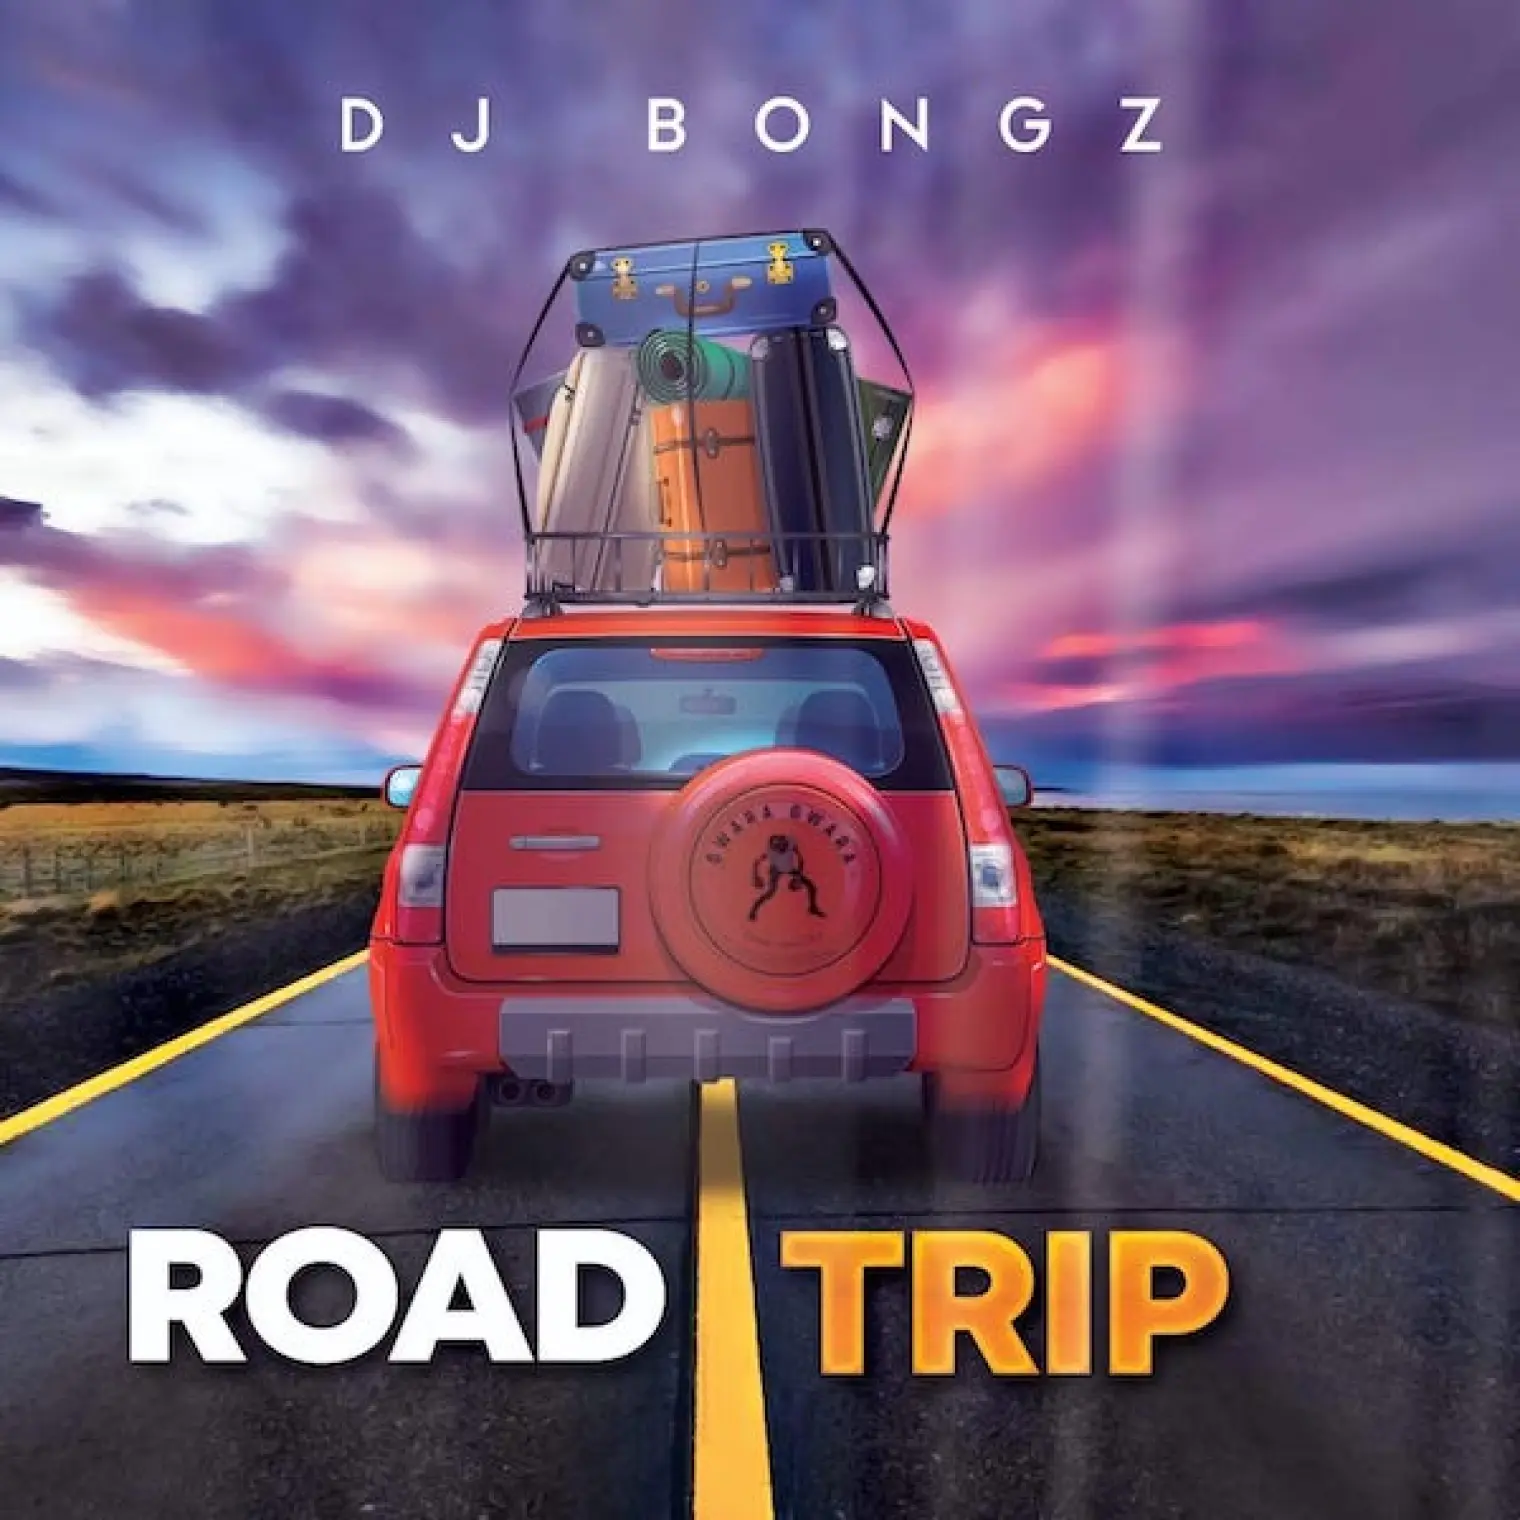 Road Trip -  Dj Bongz 